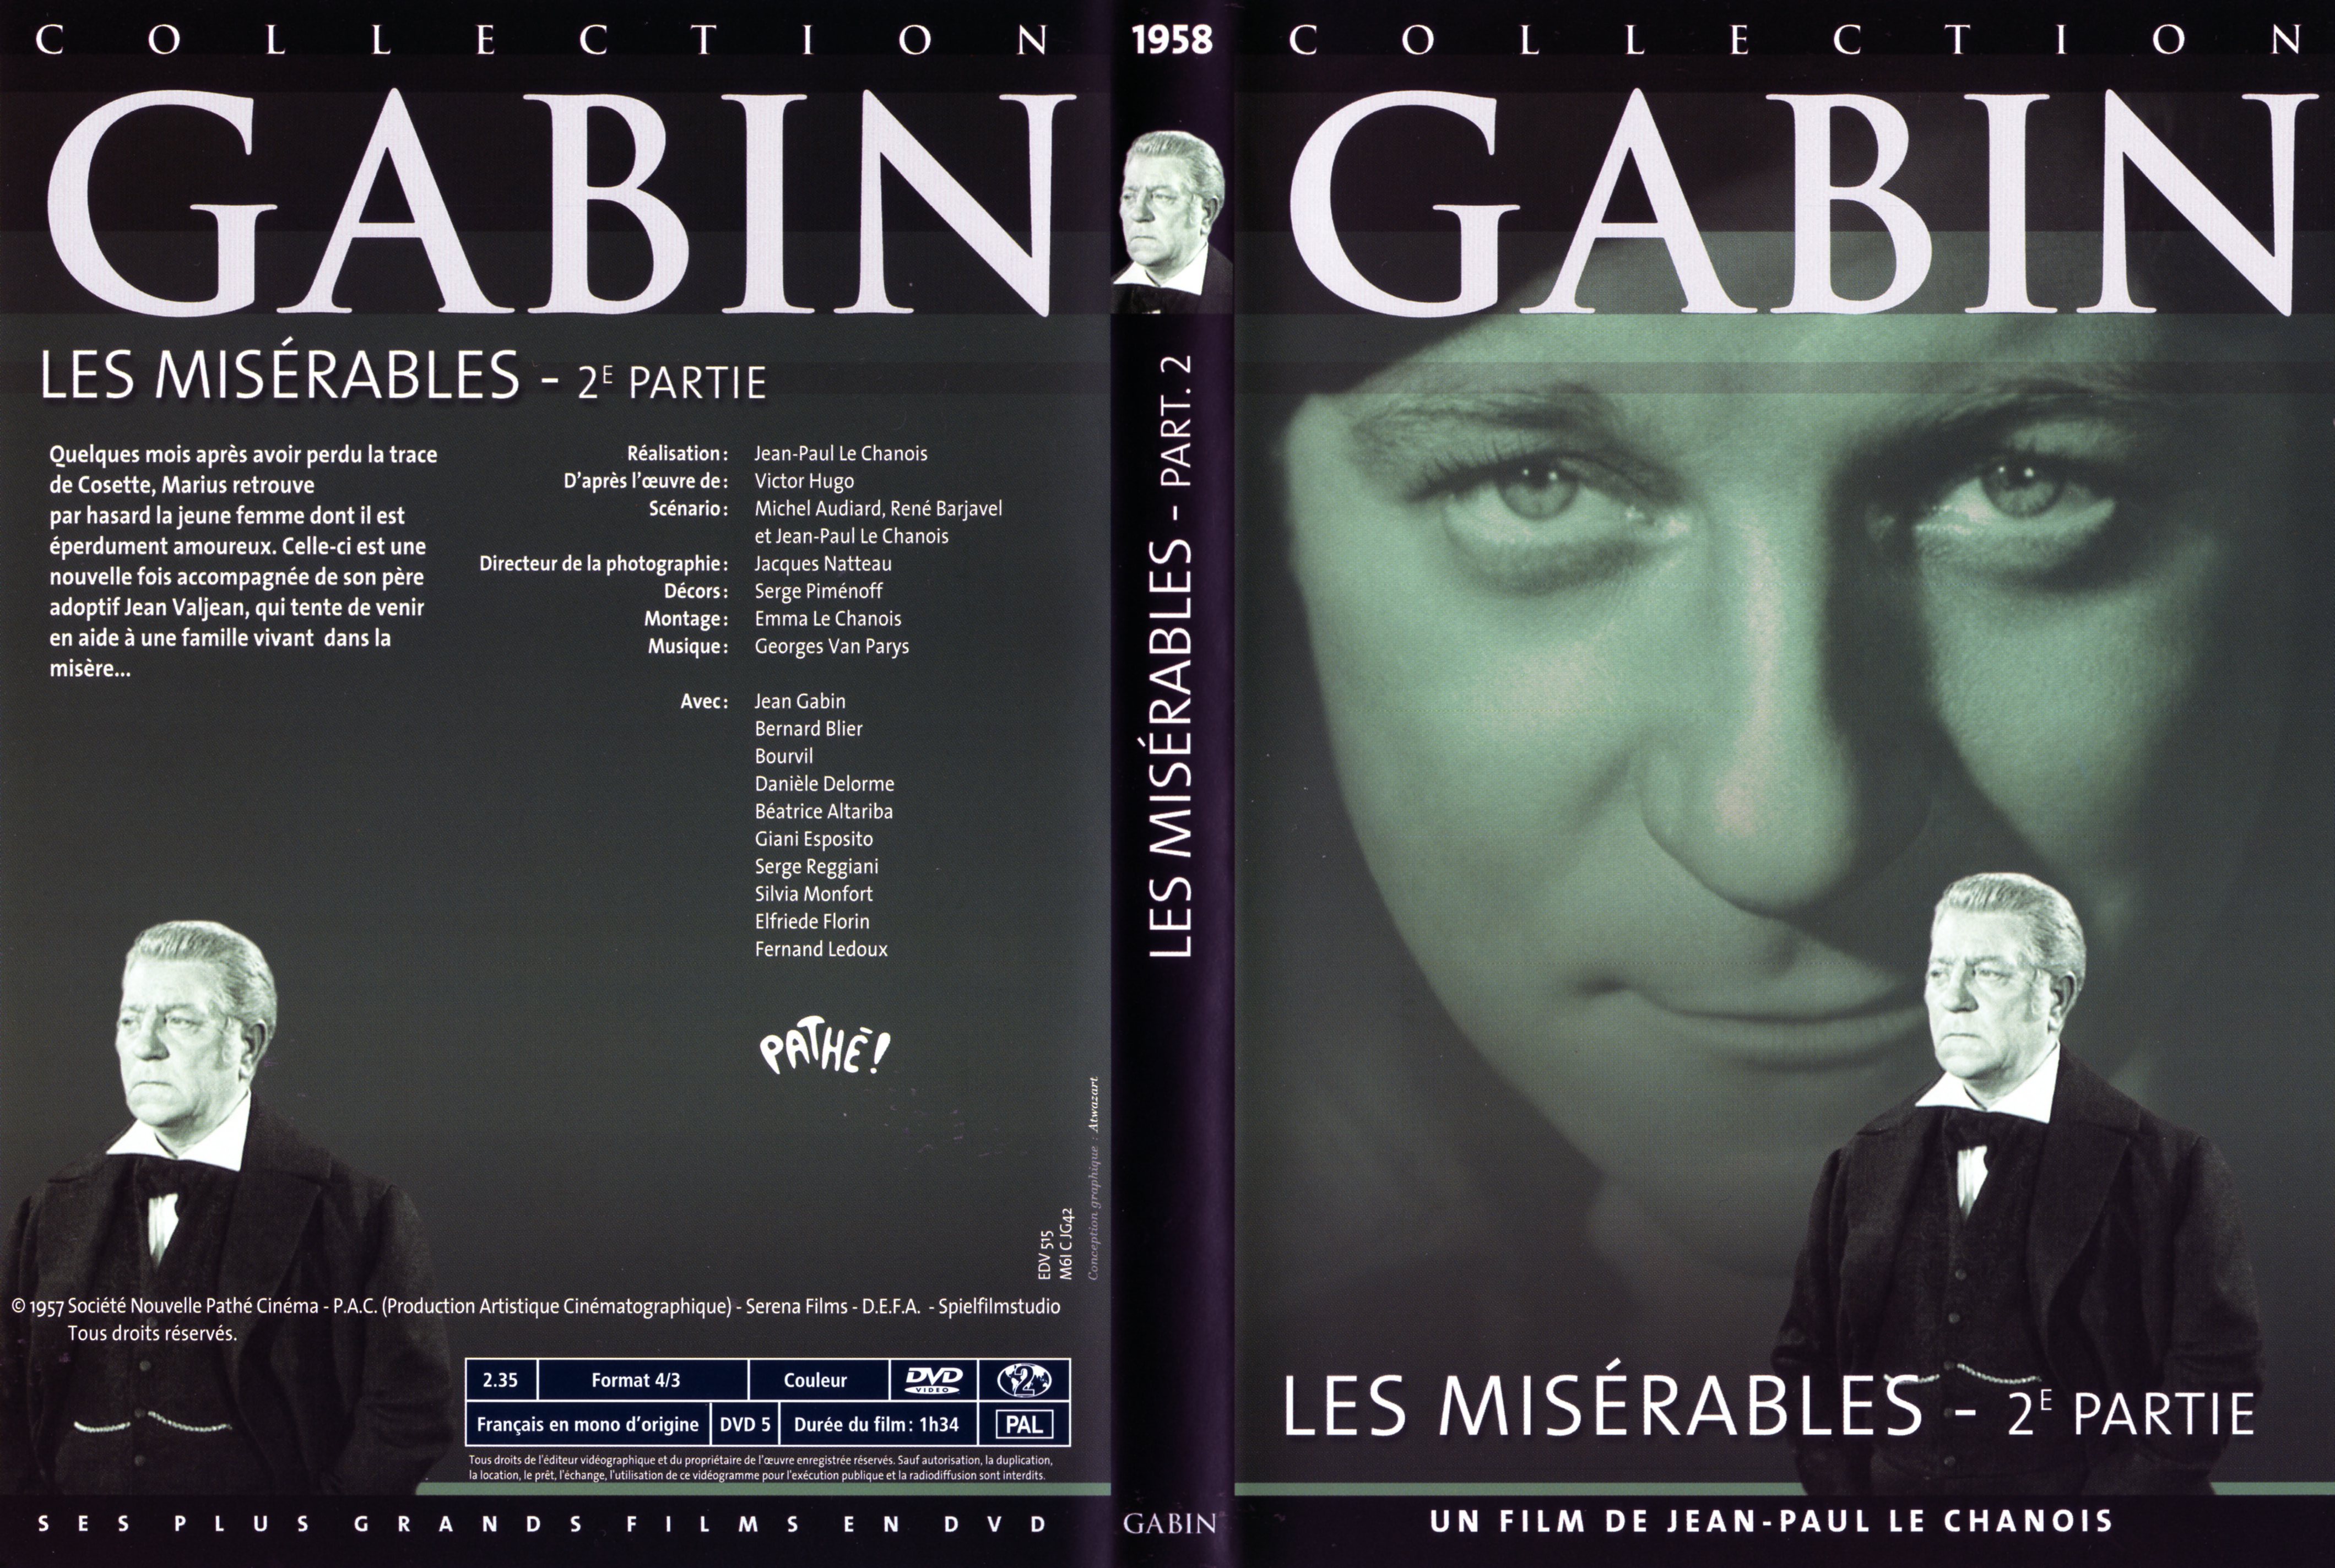 Jaquette DVD Les misrables (Gabin) 2 me poque v2